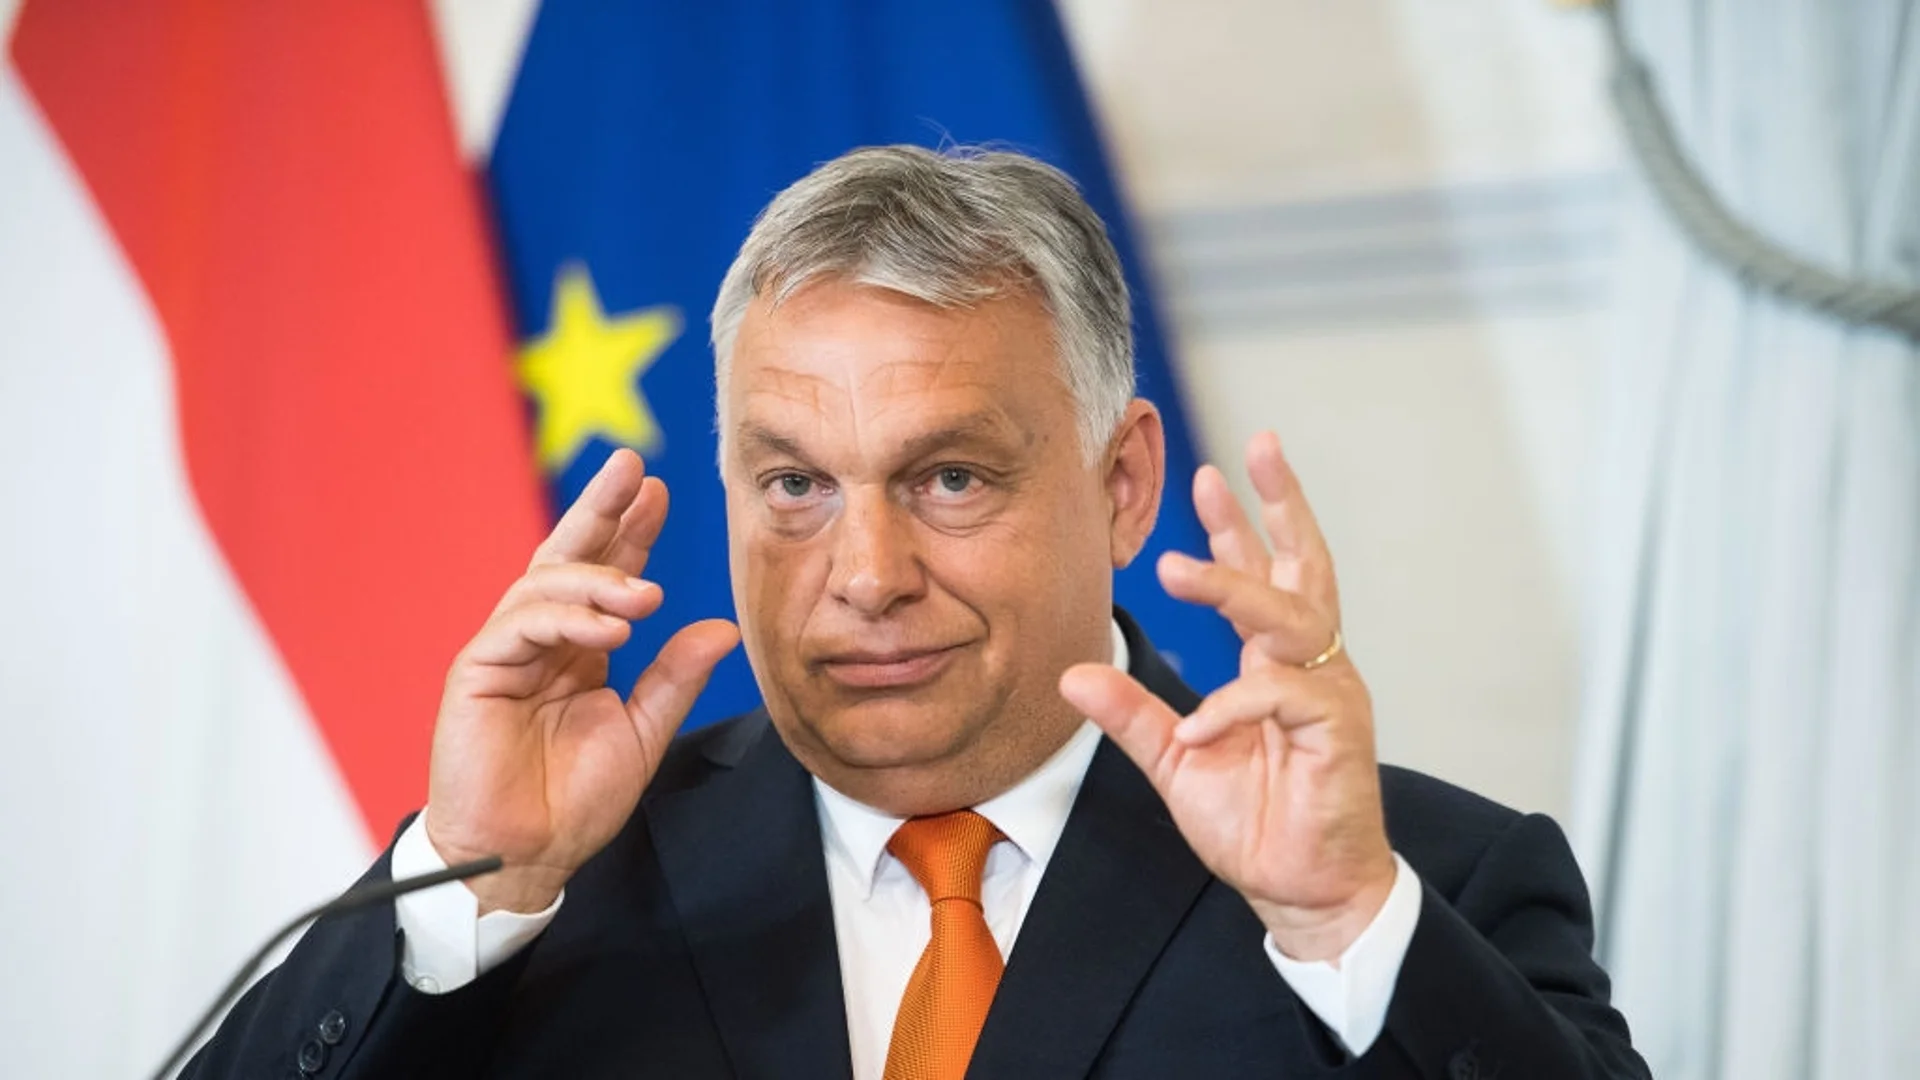 "Орбан да подаде оставка": Хиляди излязоха на протест в Унгария (ВИДЕО)